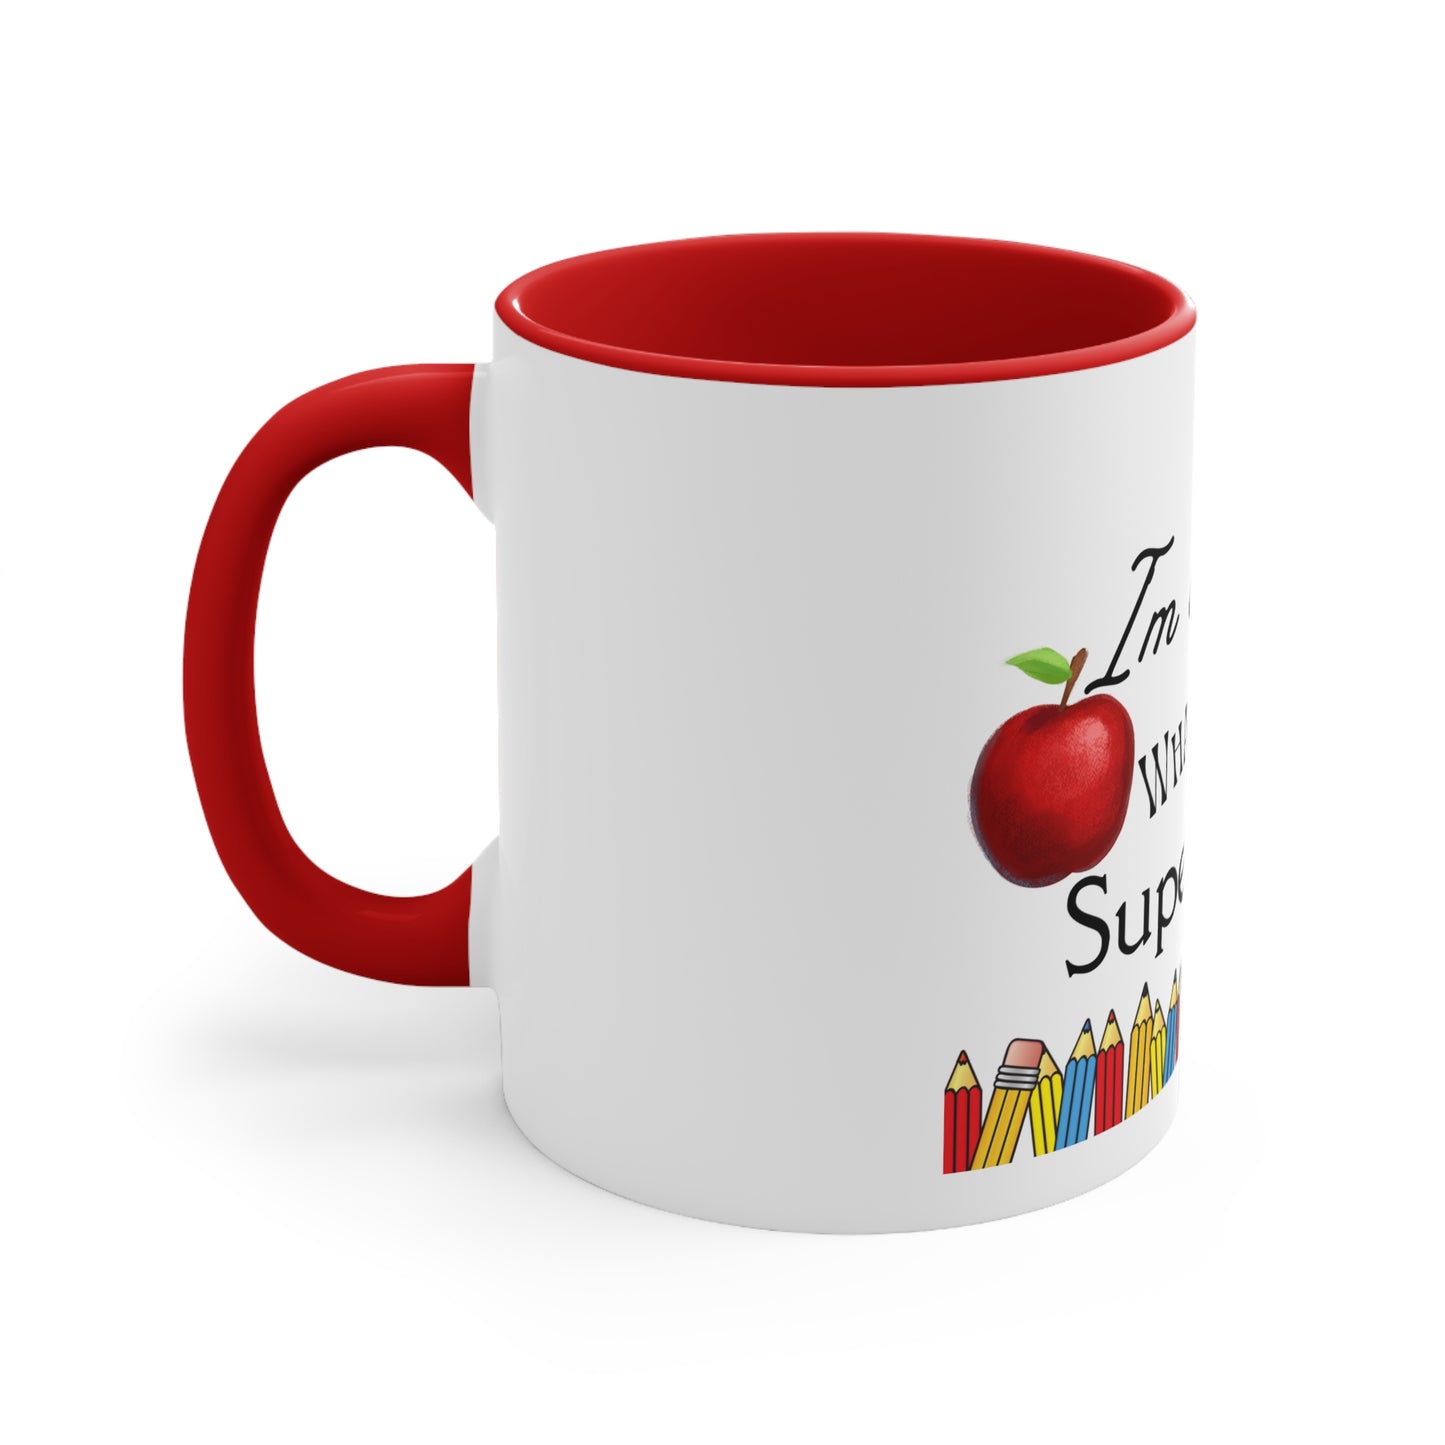 I’m A Teacher Coffee Mug, 11oz